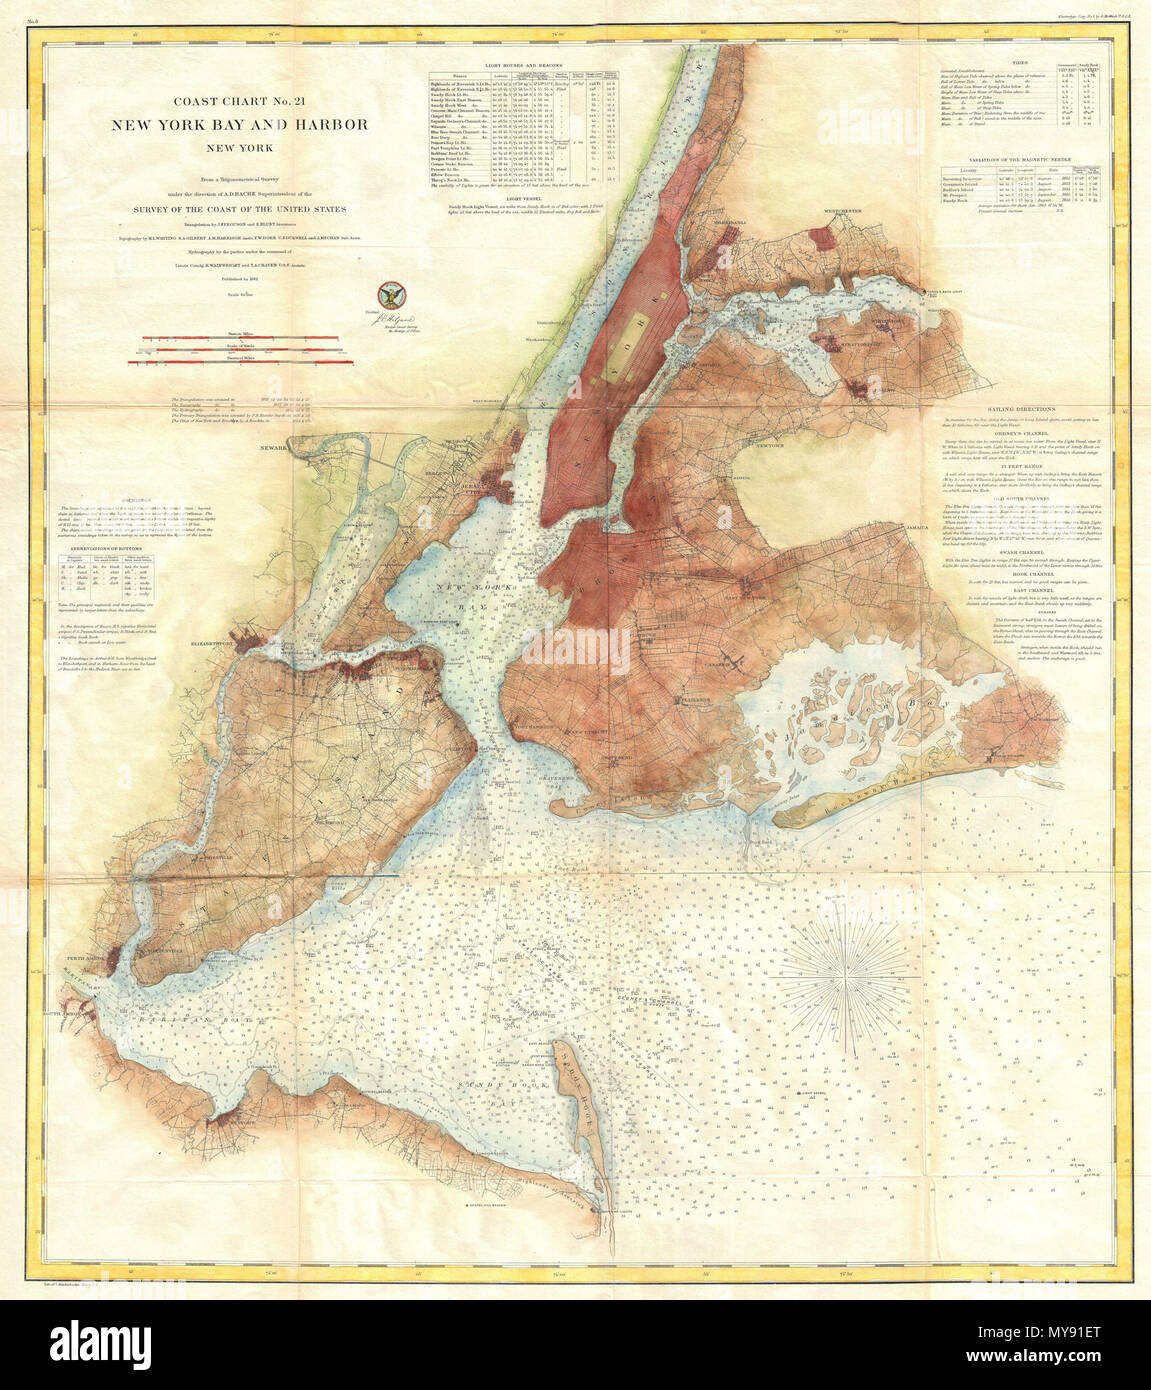 . Küste Chart Nr. 21, New York Bay und den Hafen, New York. Englisch: eine seltene 1861 US-Küstenwache chart von New York City, Hafen, und Umgebung. Einer der ersten des 19. Jahrhunderts Karren zu zeigt New York City wie wir sie heute kennen, einschließlich Manhattan, Queens, Brooklyn, die Bronx und Staten Island. Auch Jersey City, Newark und Hoboken. Dies ist ein mid-point Chart in der Entwicklung dieses bestimmten Serie. In-land Details sind nicht so umfassend wie in späteren Plänen, insbesondere durch die 1866 Serie, bleibt jedoch ziemlich gründliche insbesondere im Hinblick auf die Entwicklung von Städten und communiti Stockfoto